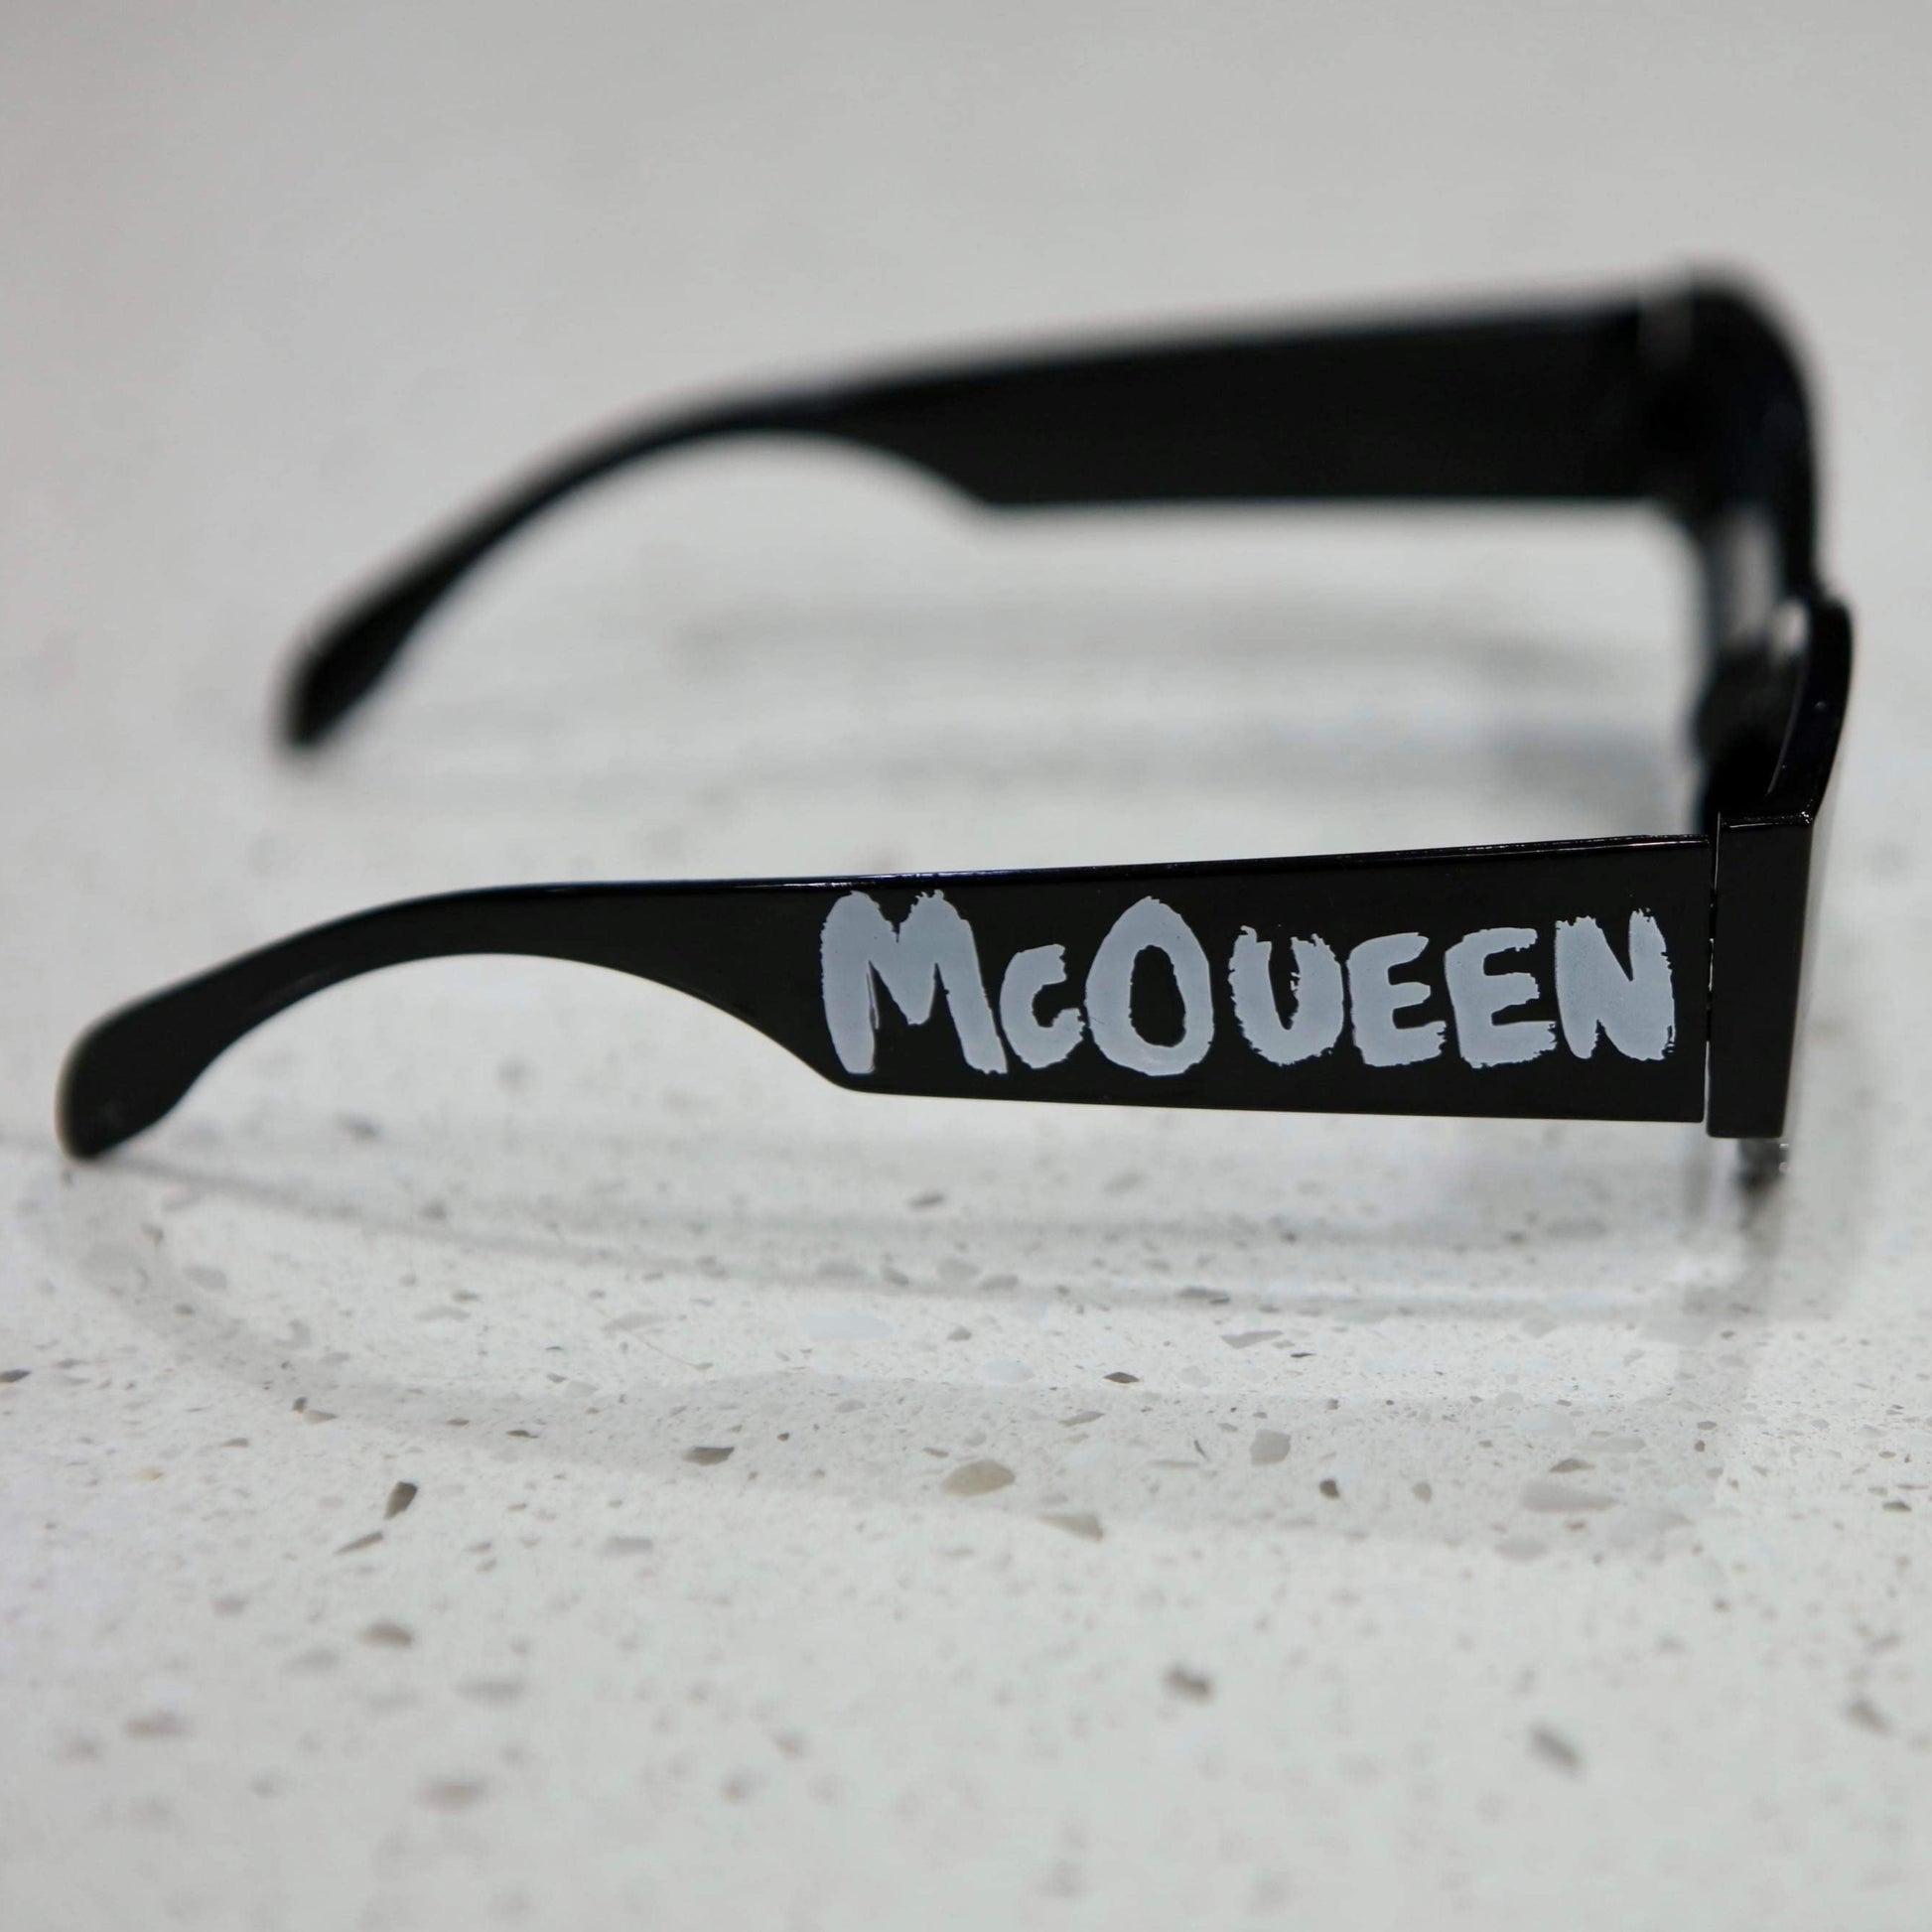 The Designer Sunglasses - BaeBekillinem- Black/White- Pink/ Black- Mcqueen